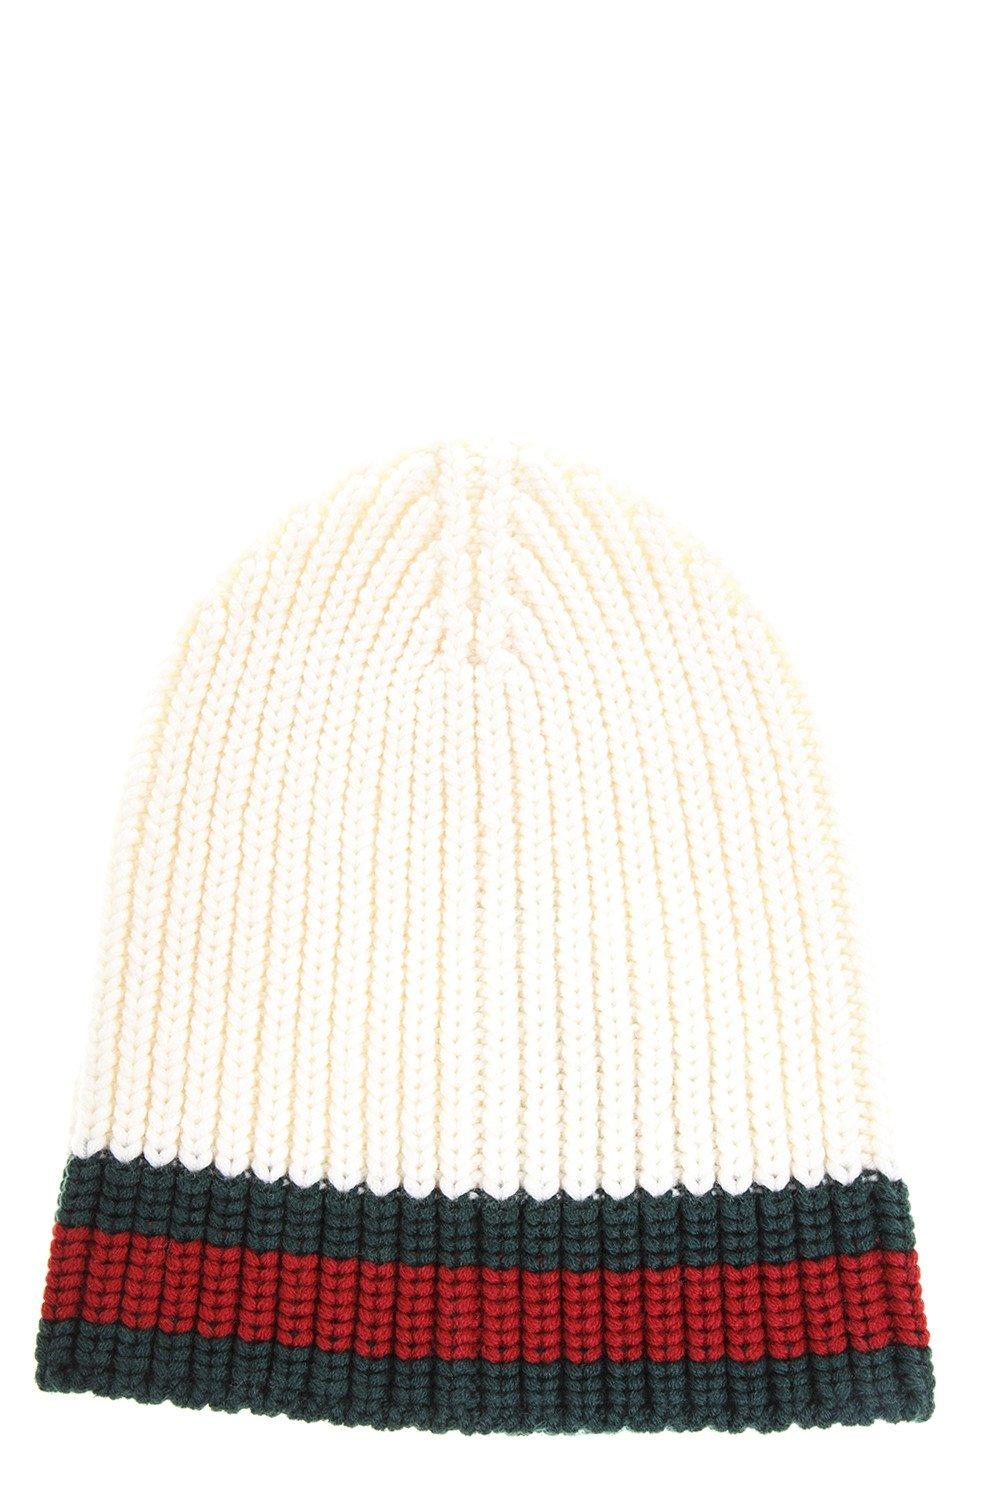 gucci knit hat